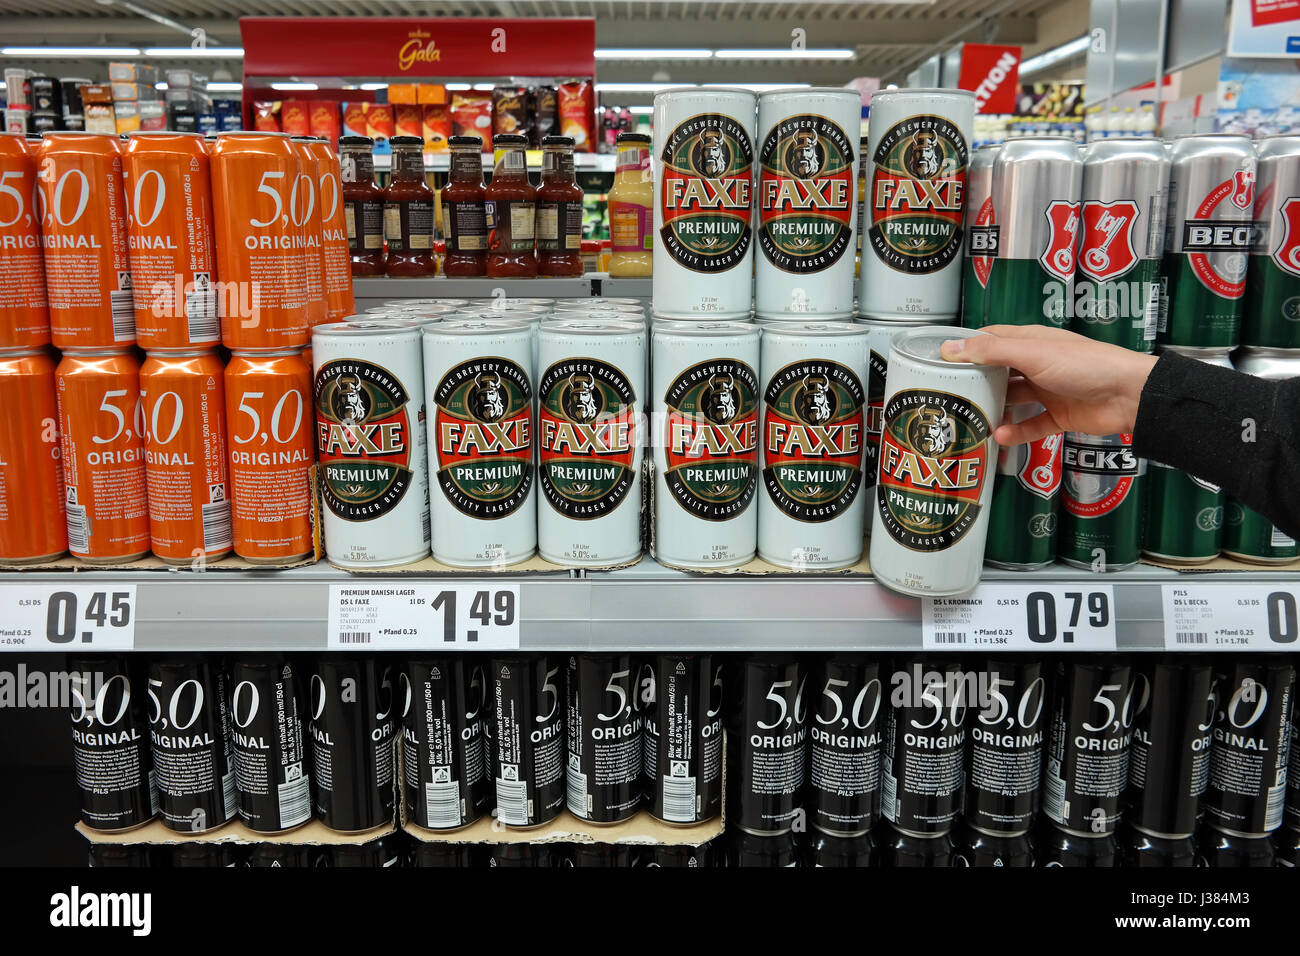 Faxe Premium Lagerbier Dosen in einem Supermarkt Stockfotografie - Alamy